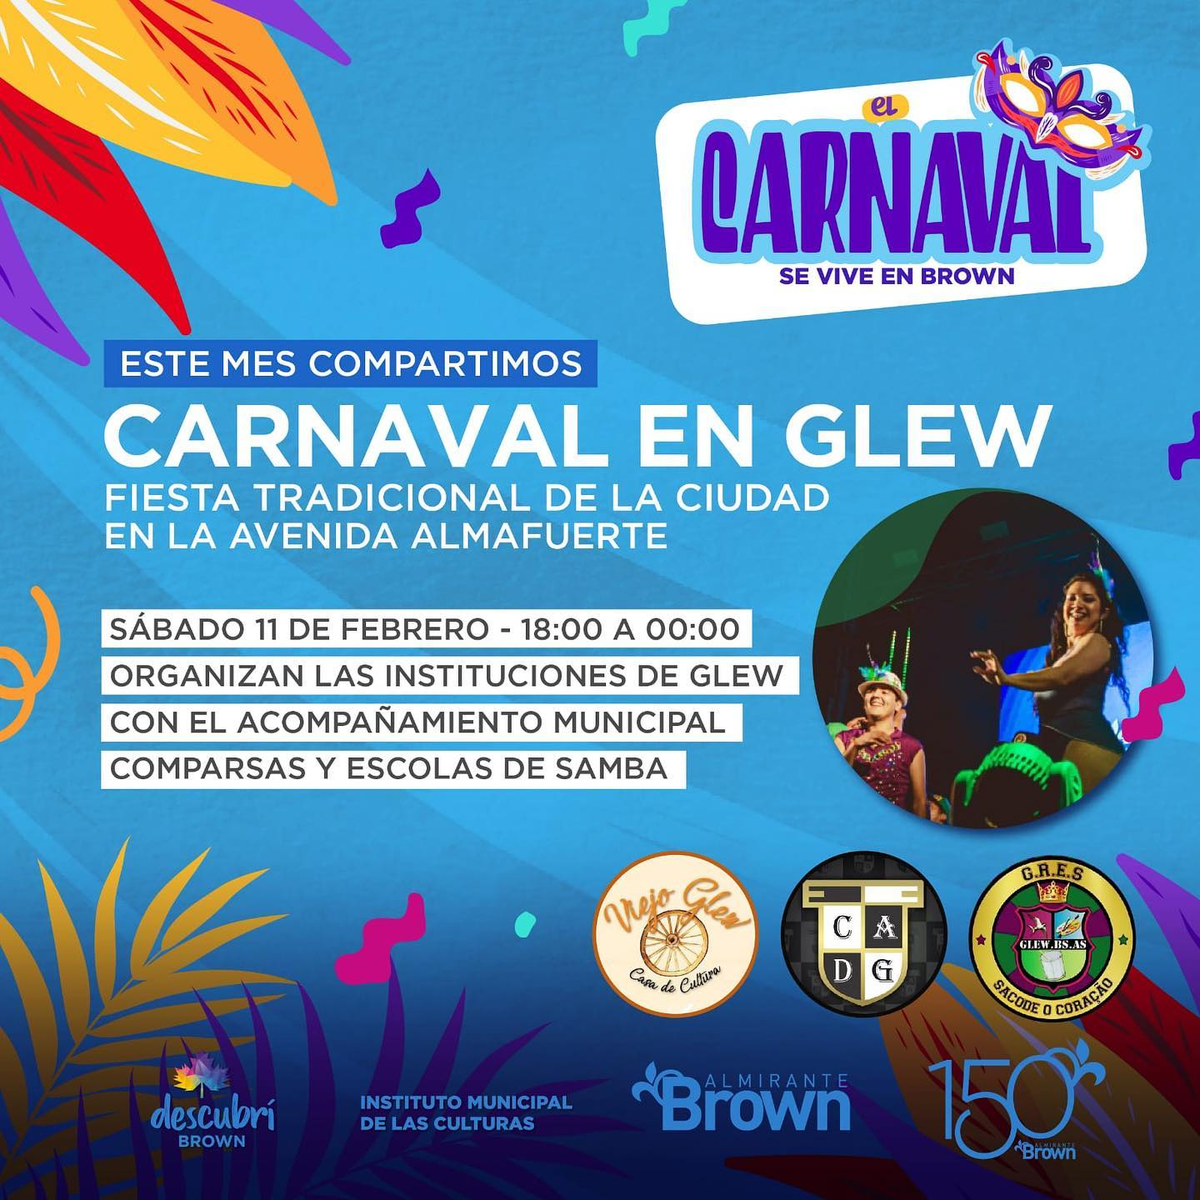 El próximo sábado se festejará el carnaval en Glew. 